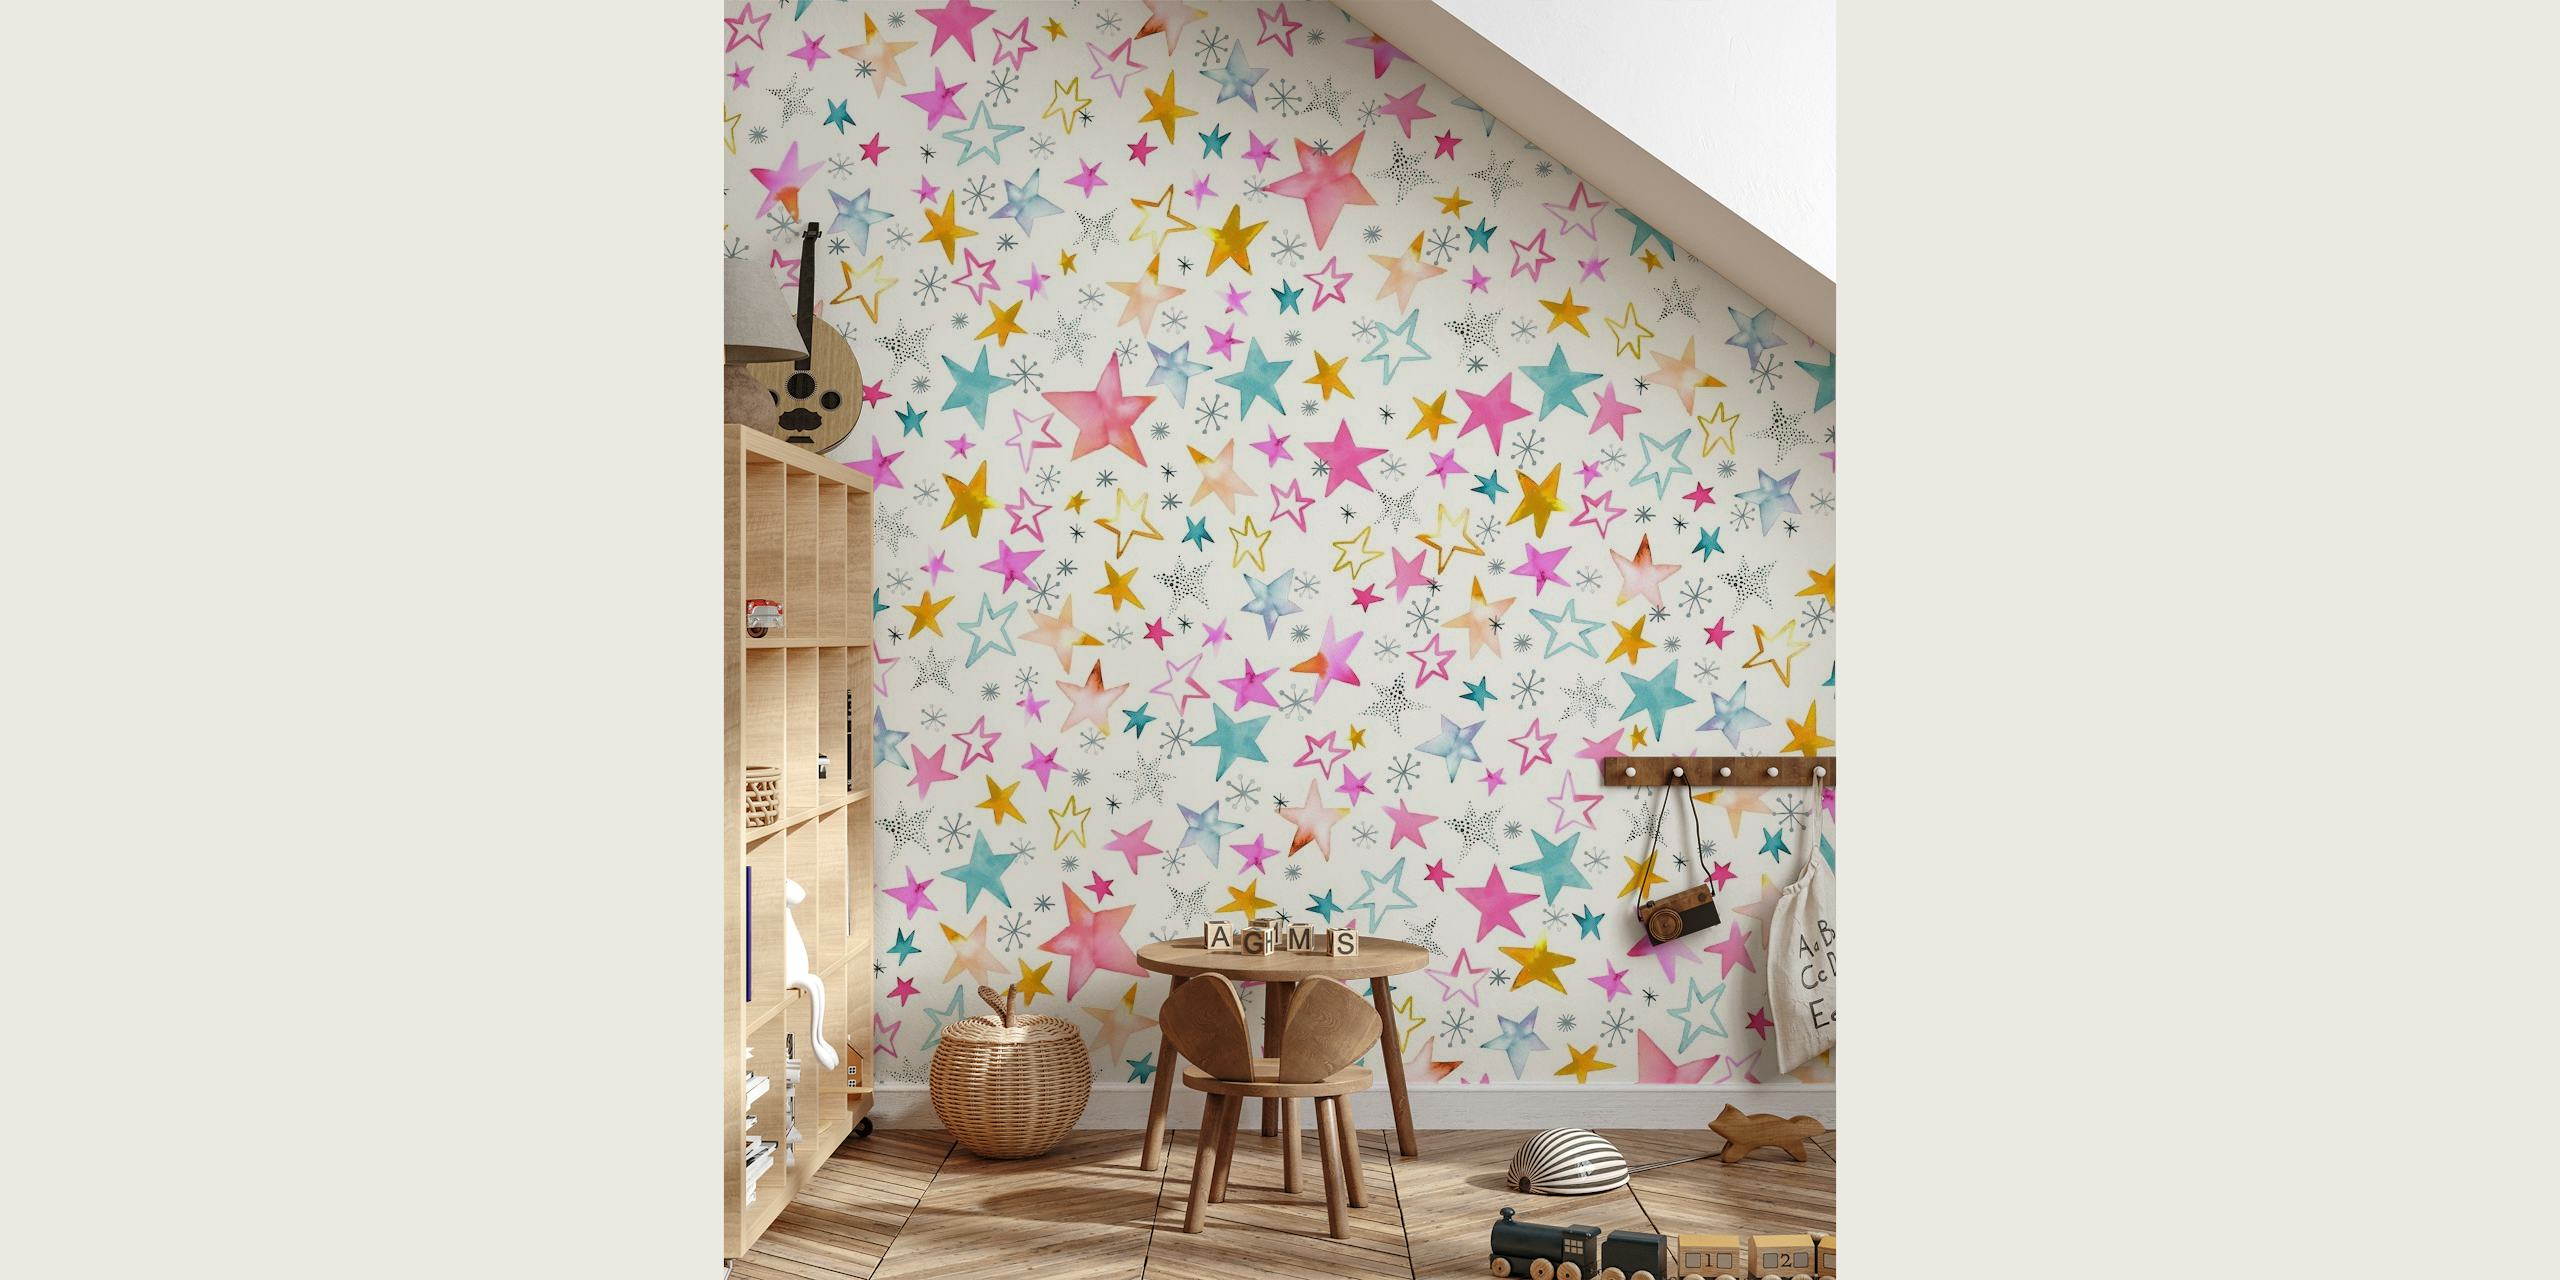 Papier peint mural à sticker d'étoiles rose tendre, blanches et multicolores